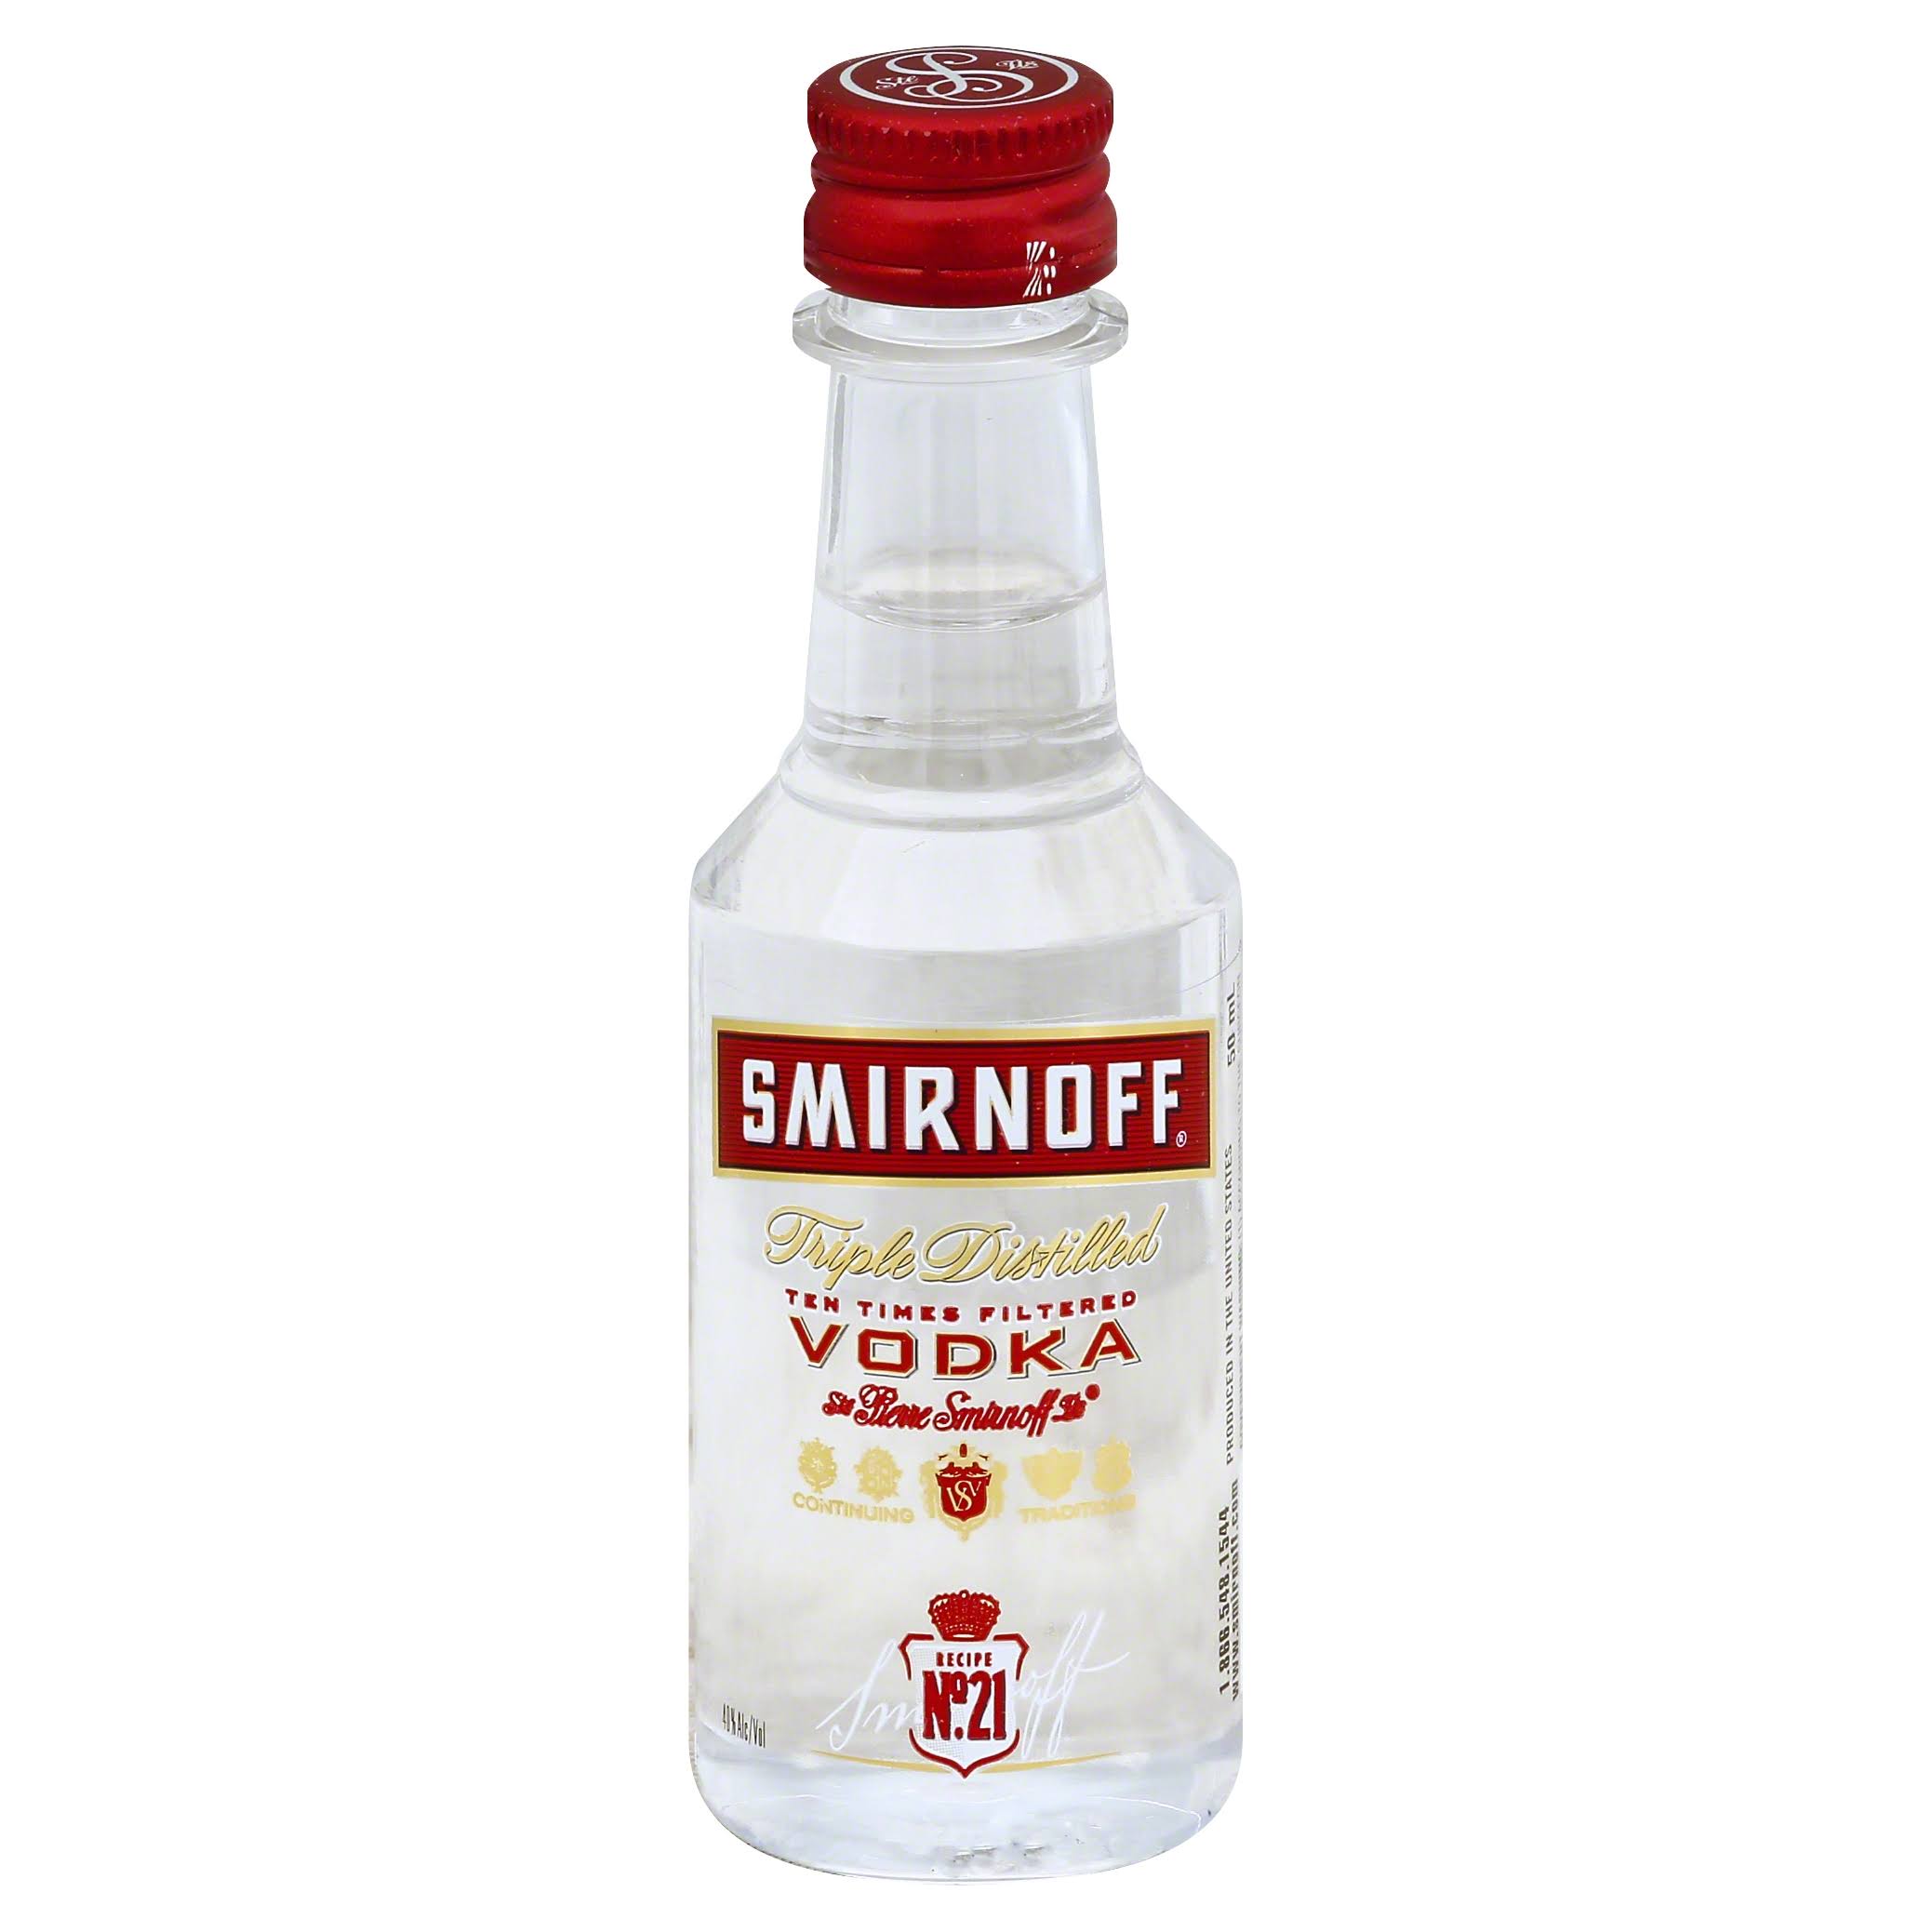 Smirnoff Vodka - 50 ml bottle